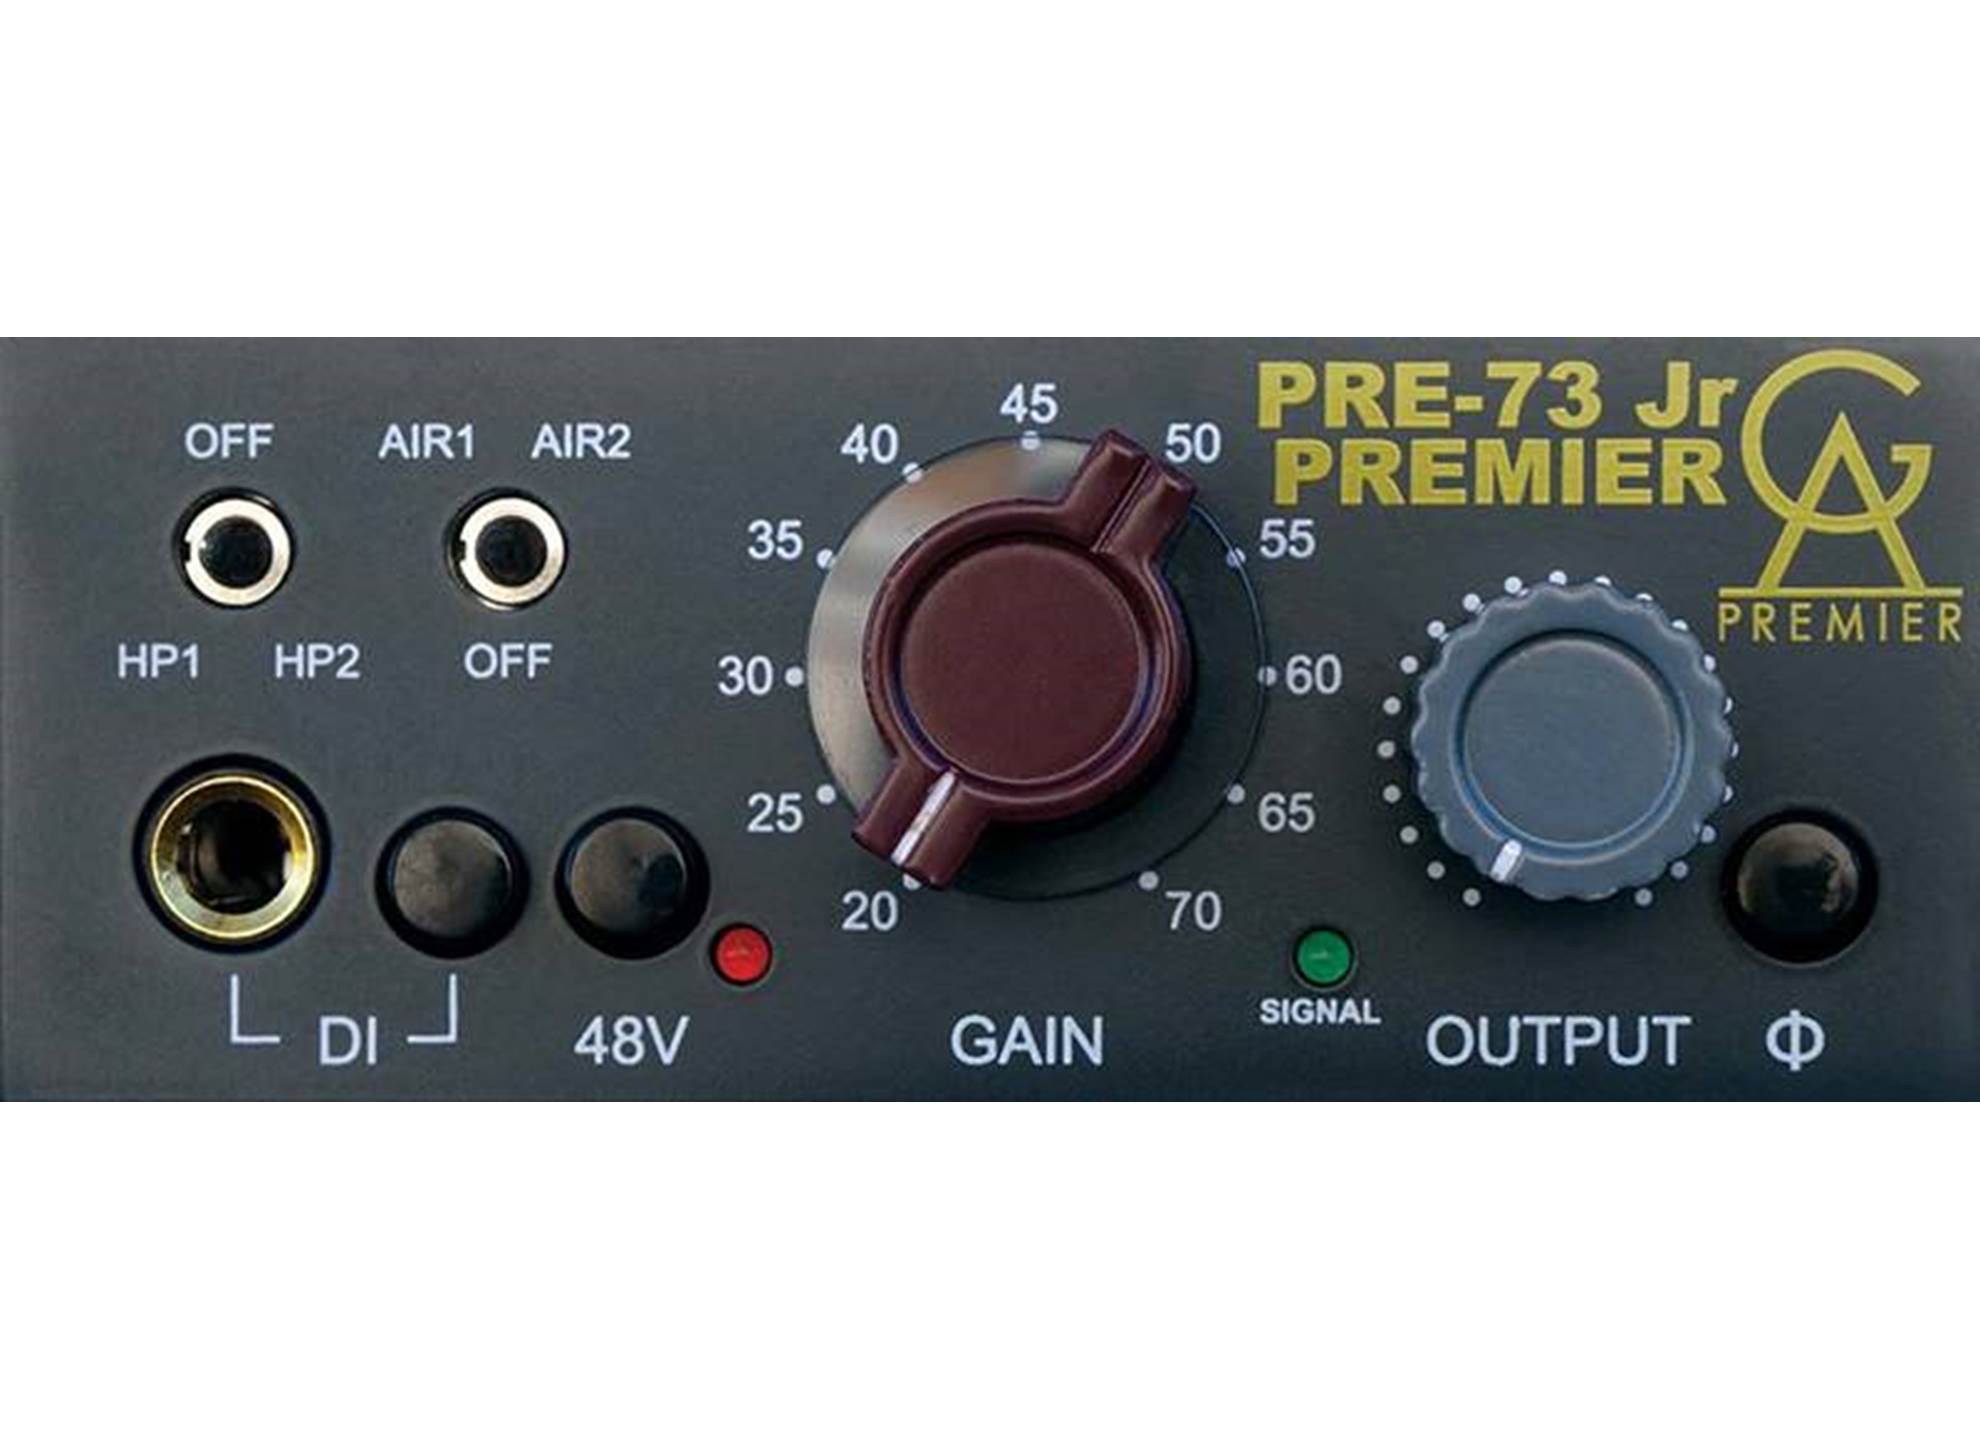 PRE-73 Jr Premier